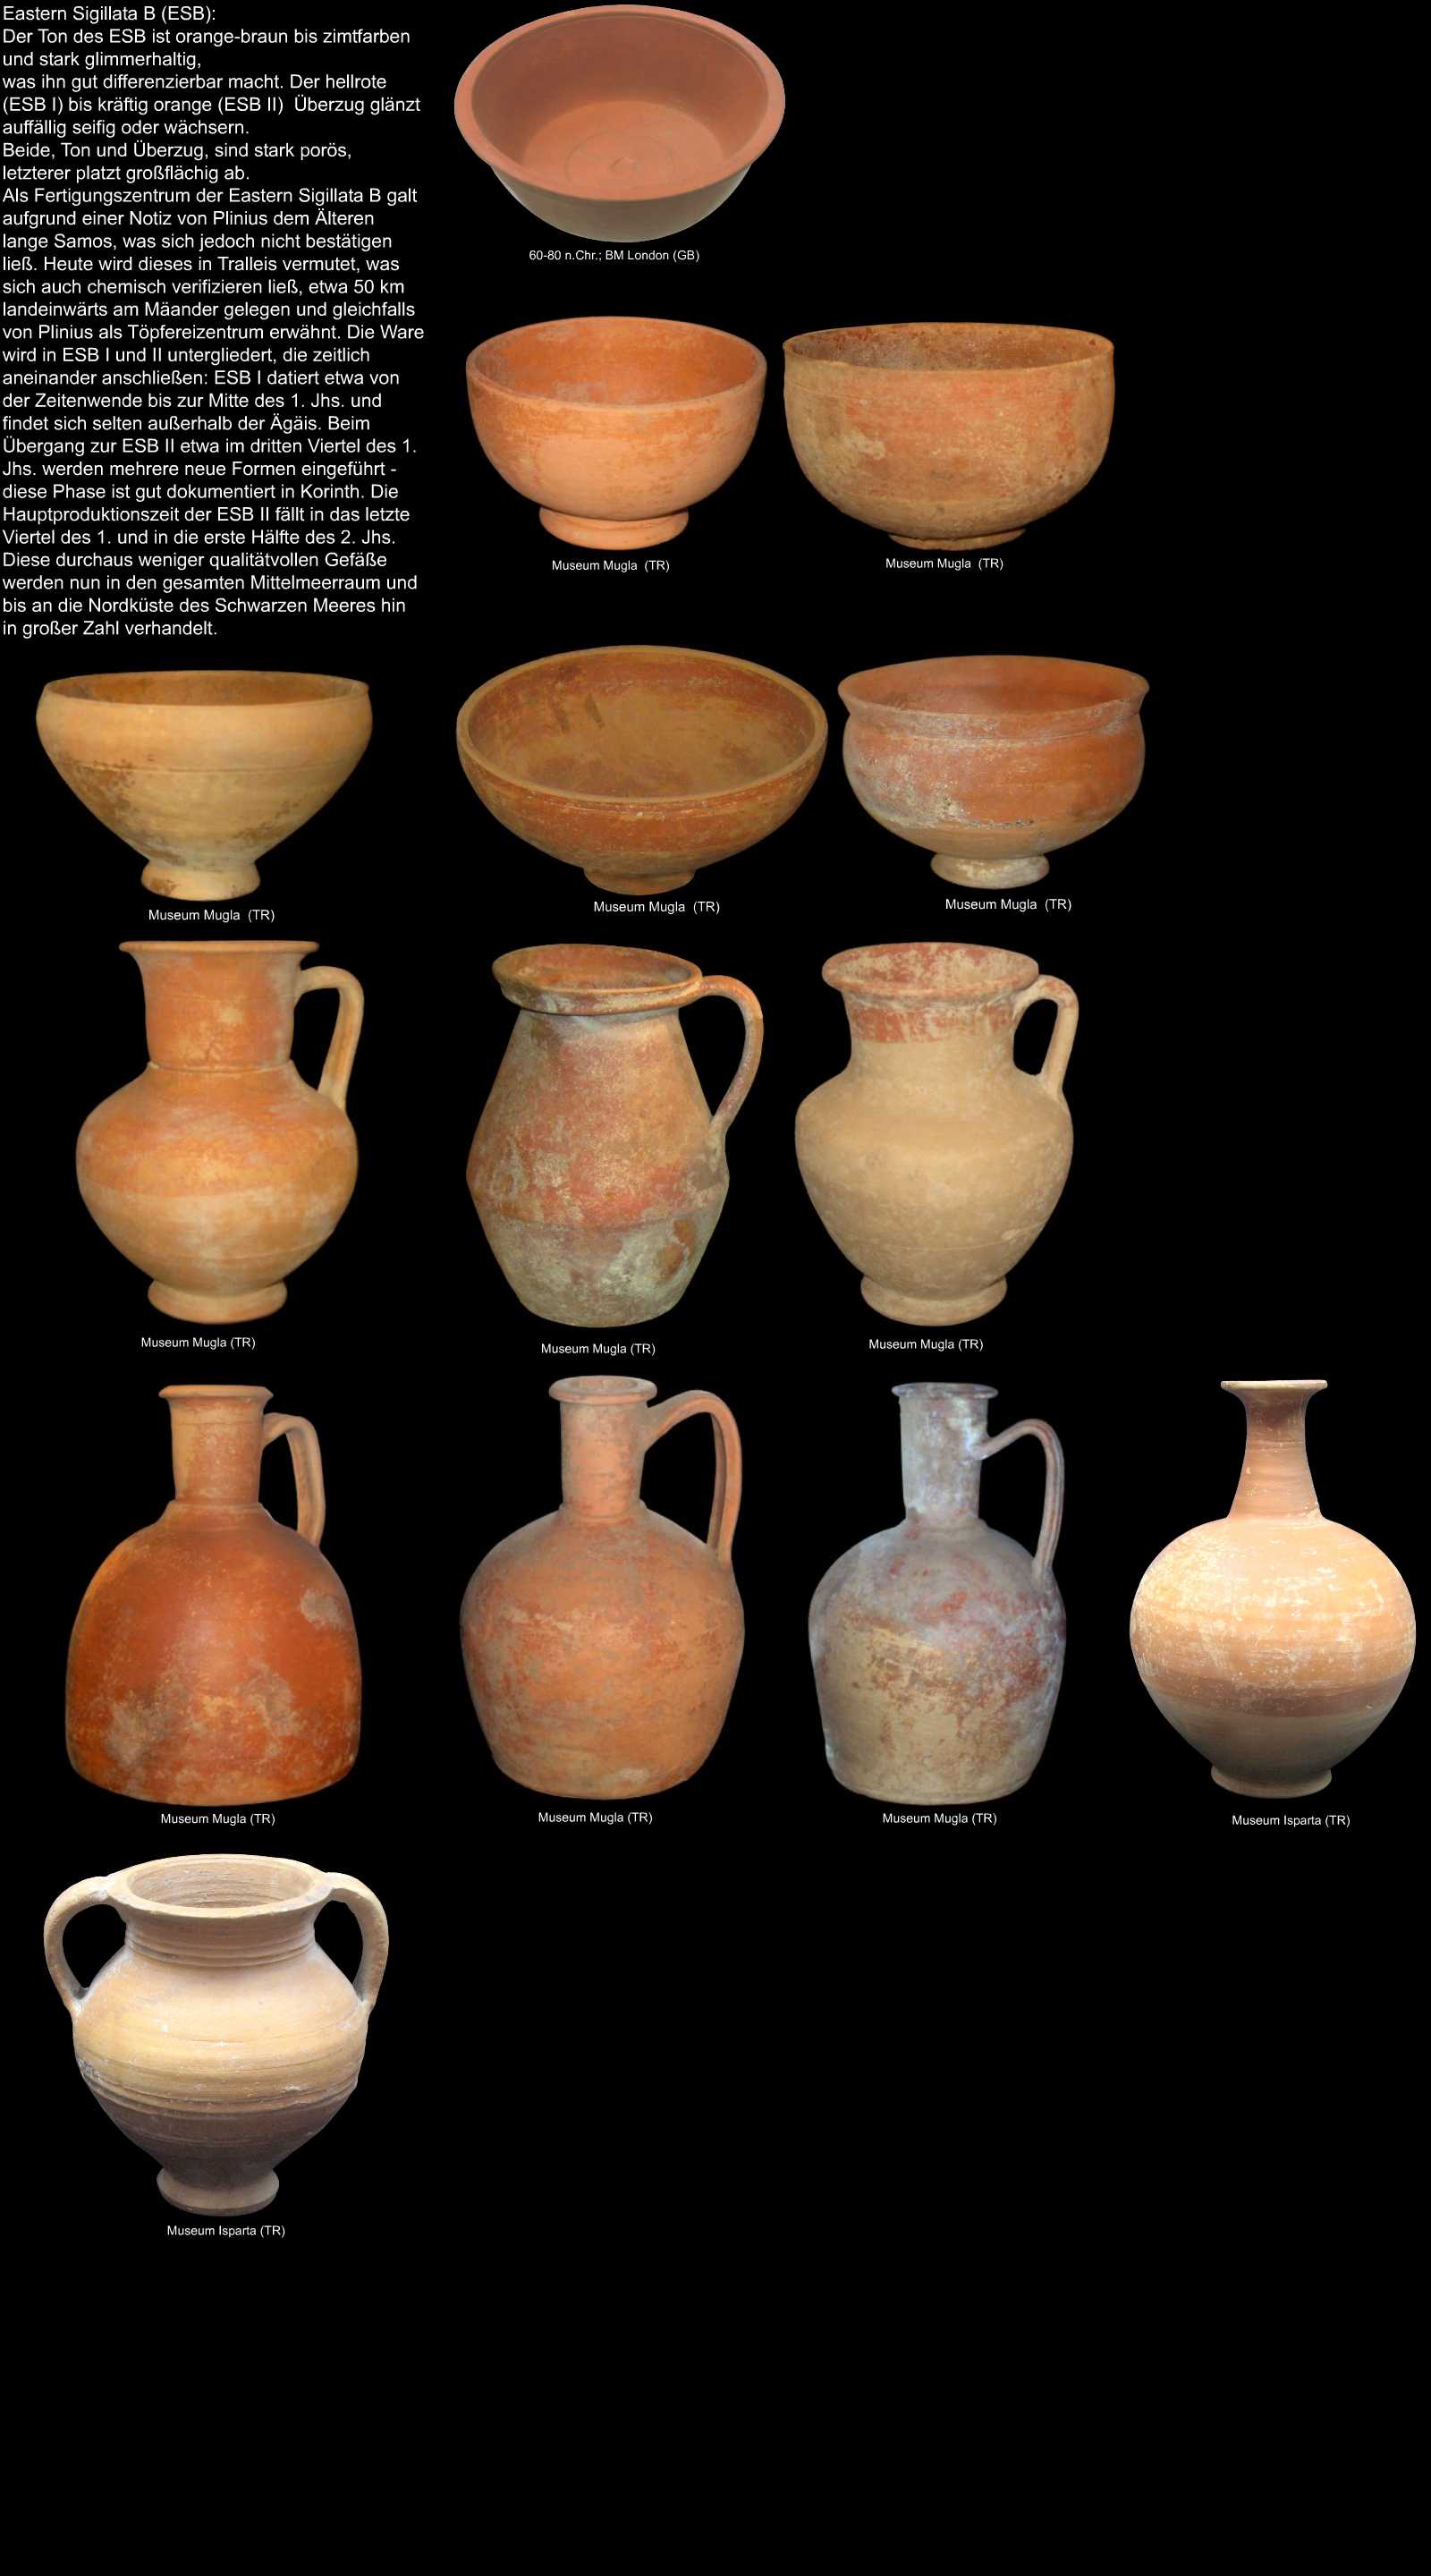 Keramik aus Tralleis